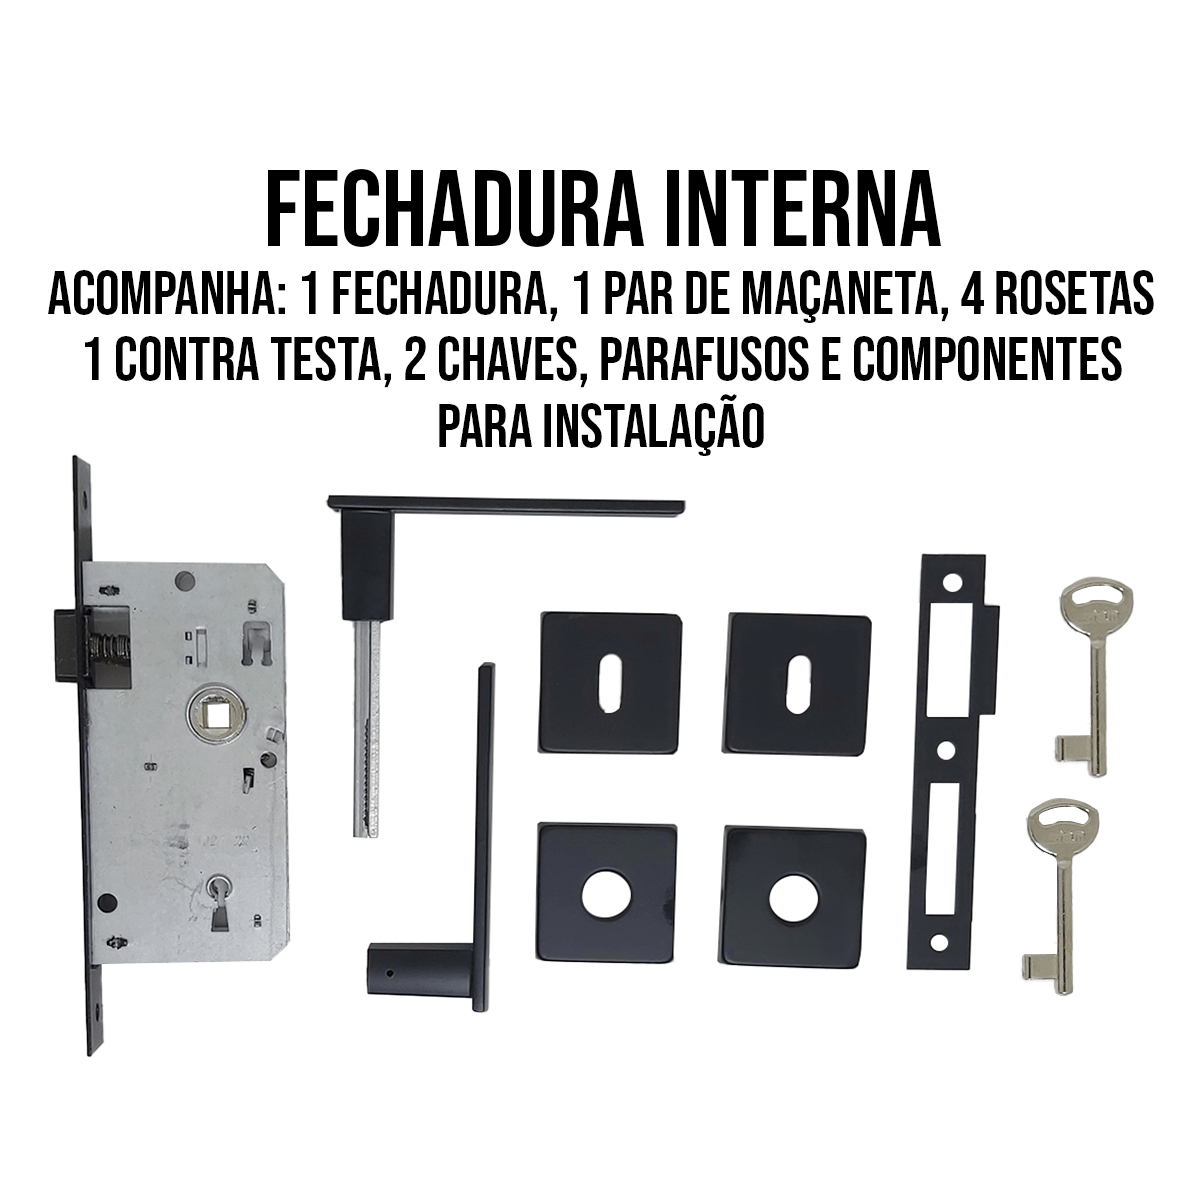 Fechadura Interna 813/35 Roseta Quadrada Preto Fosco Broca 40mm Stam - 5